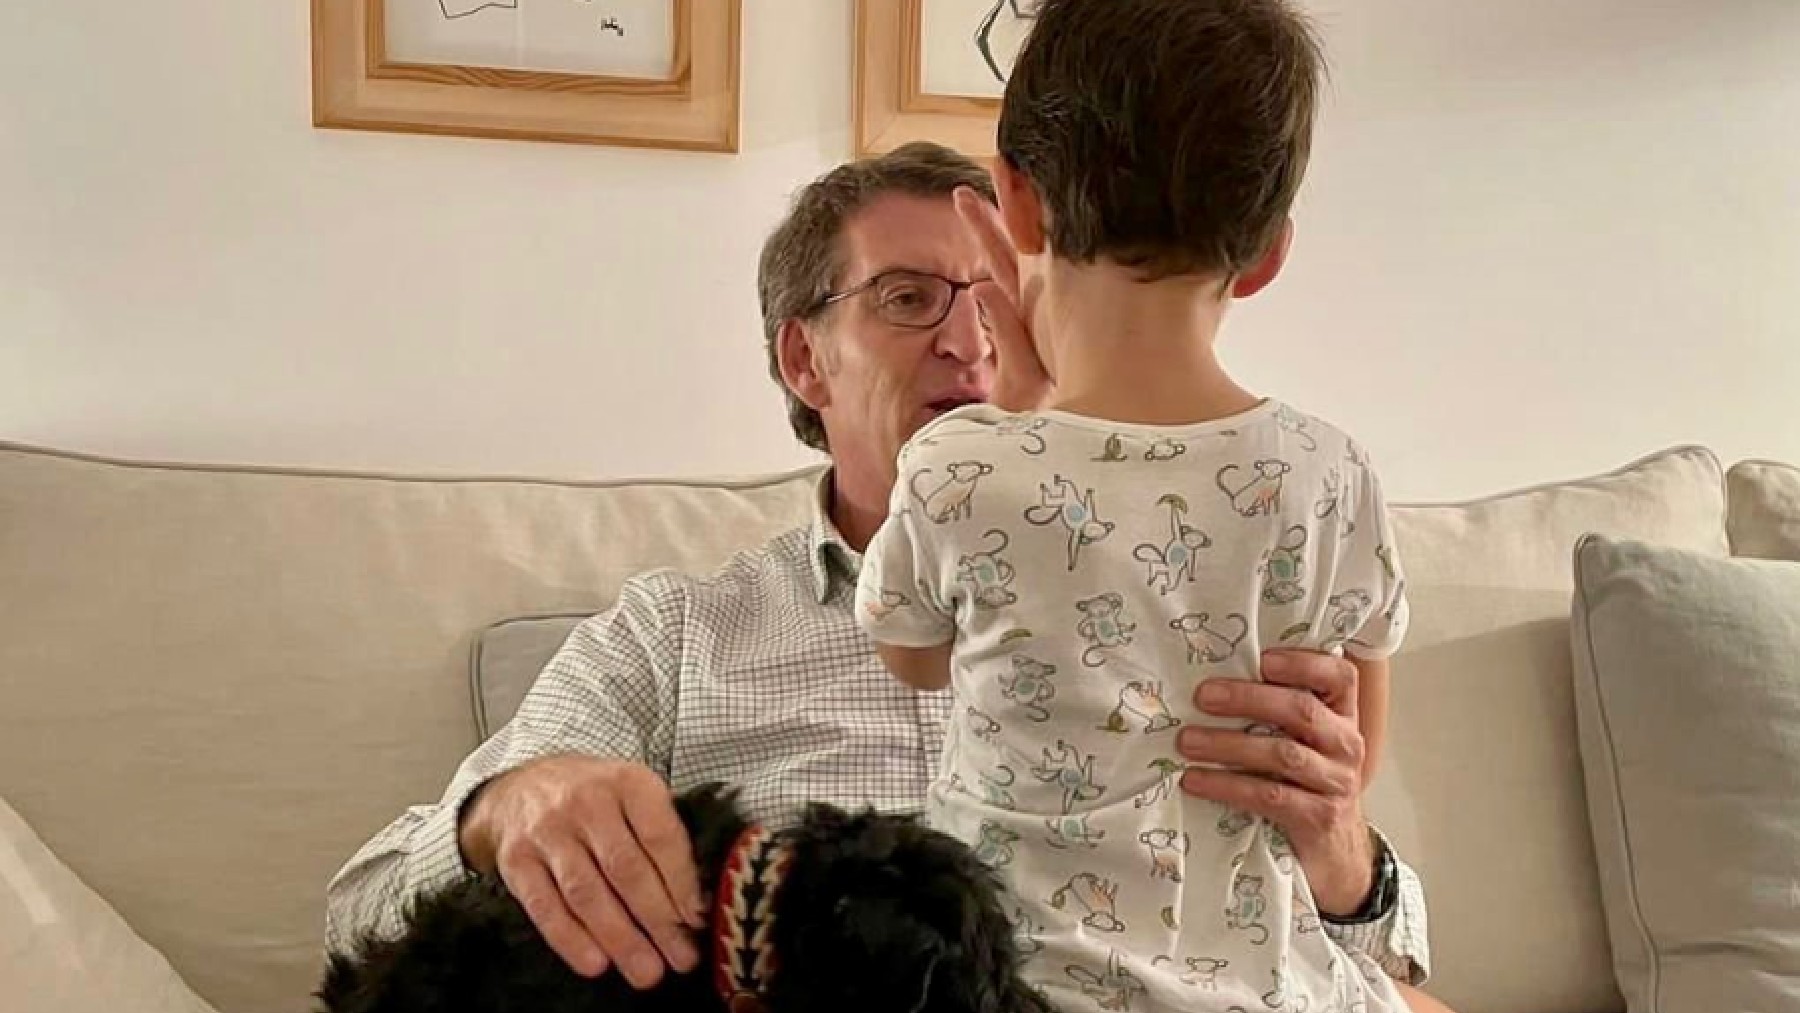 Feijóo con su hijo en su casa de Madrid. (Foto: anunezfeijoo vía Instagram).